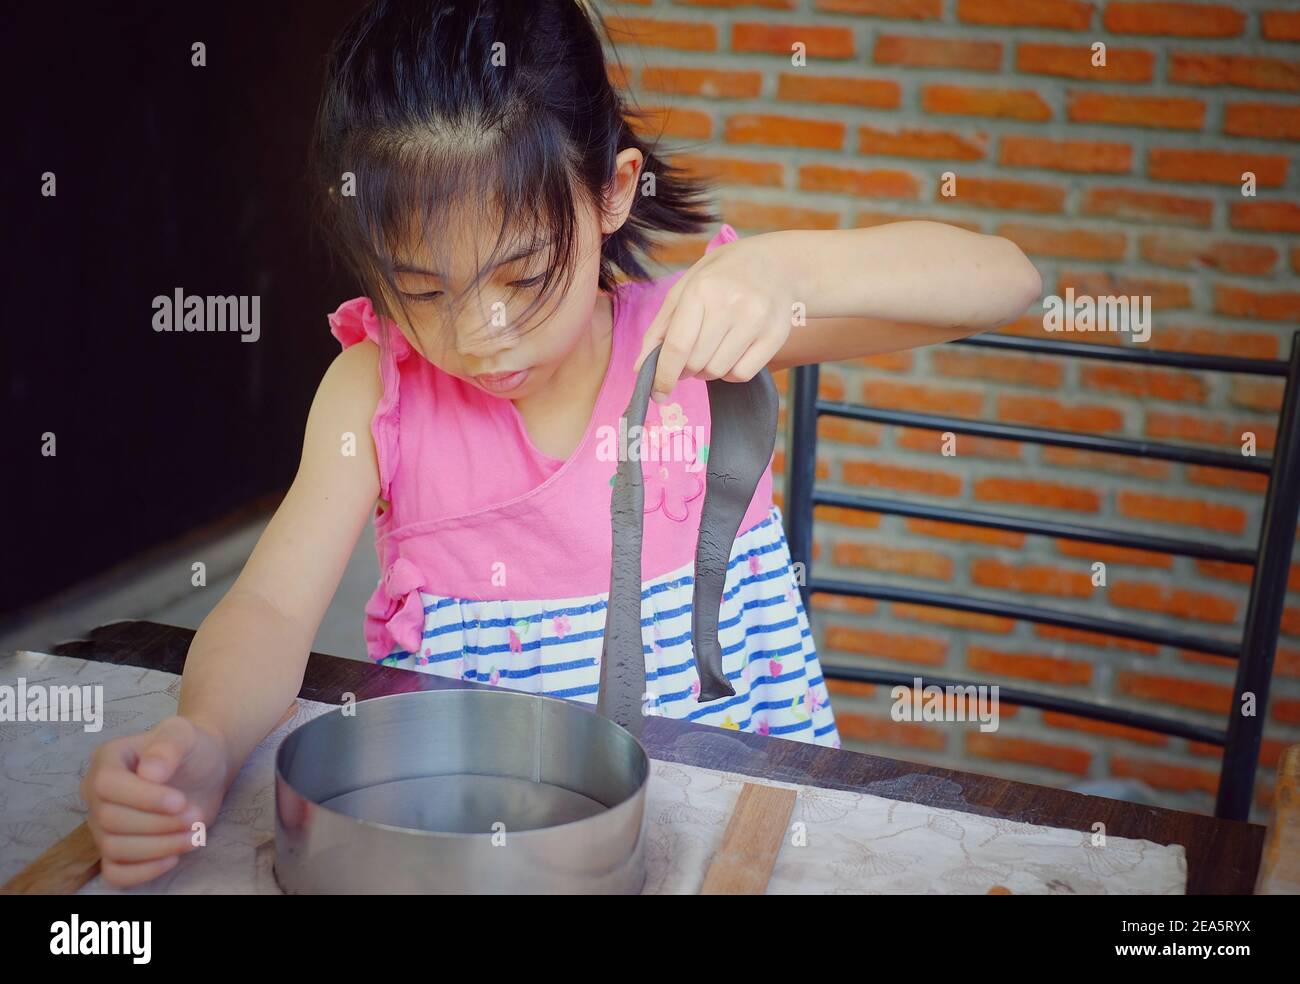 Une jeune fille asiatique mignonne dans sa classe de poterie, coupe et moule son argile dans un plat. Banque D'Images